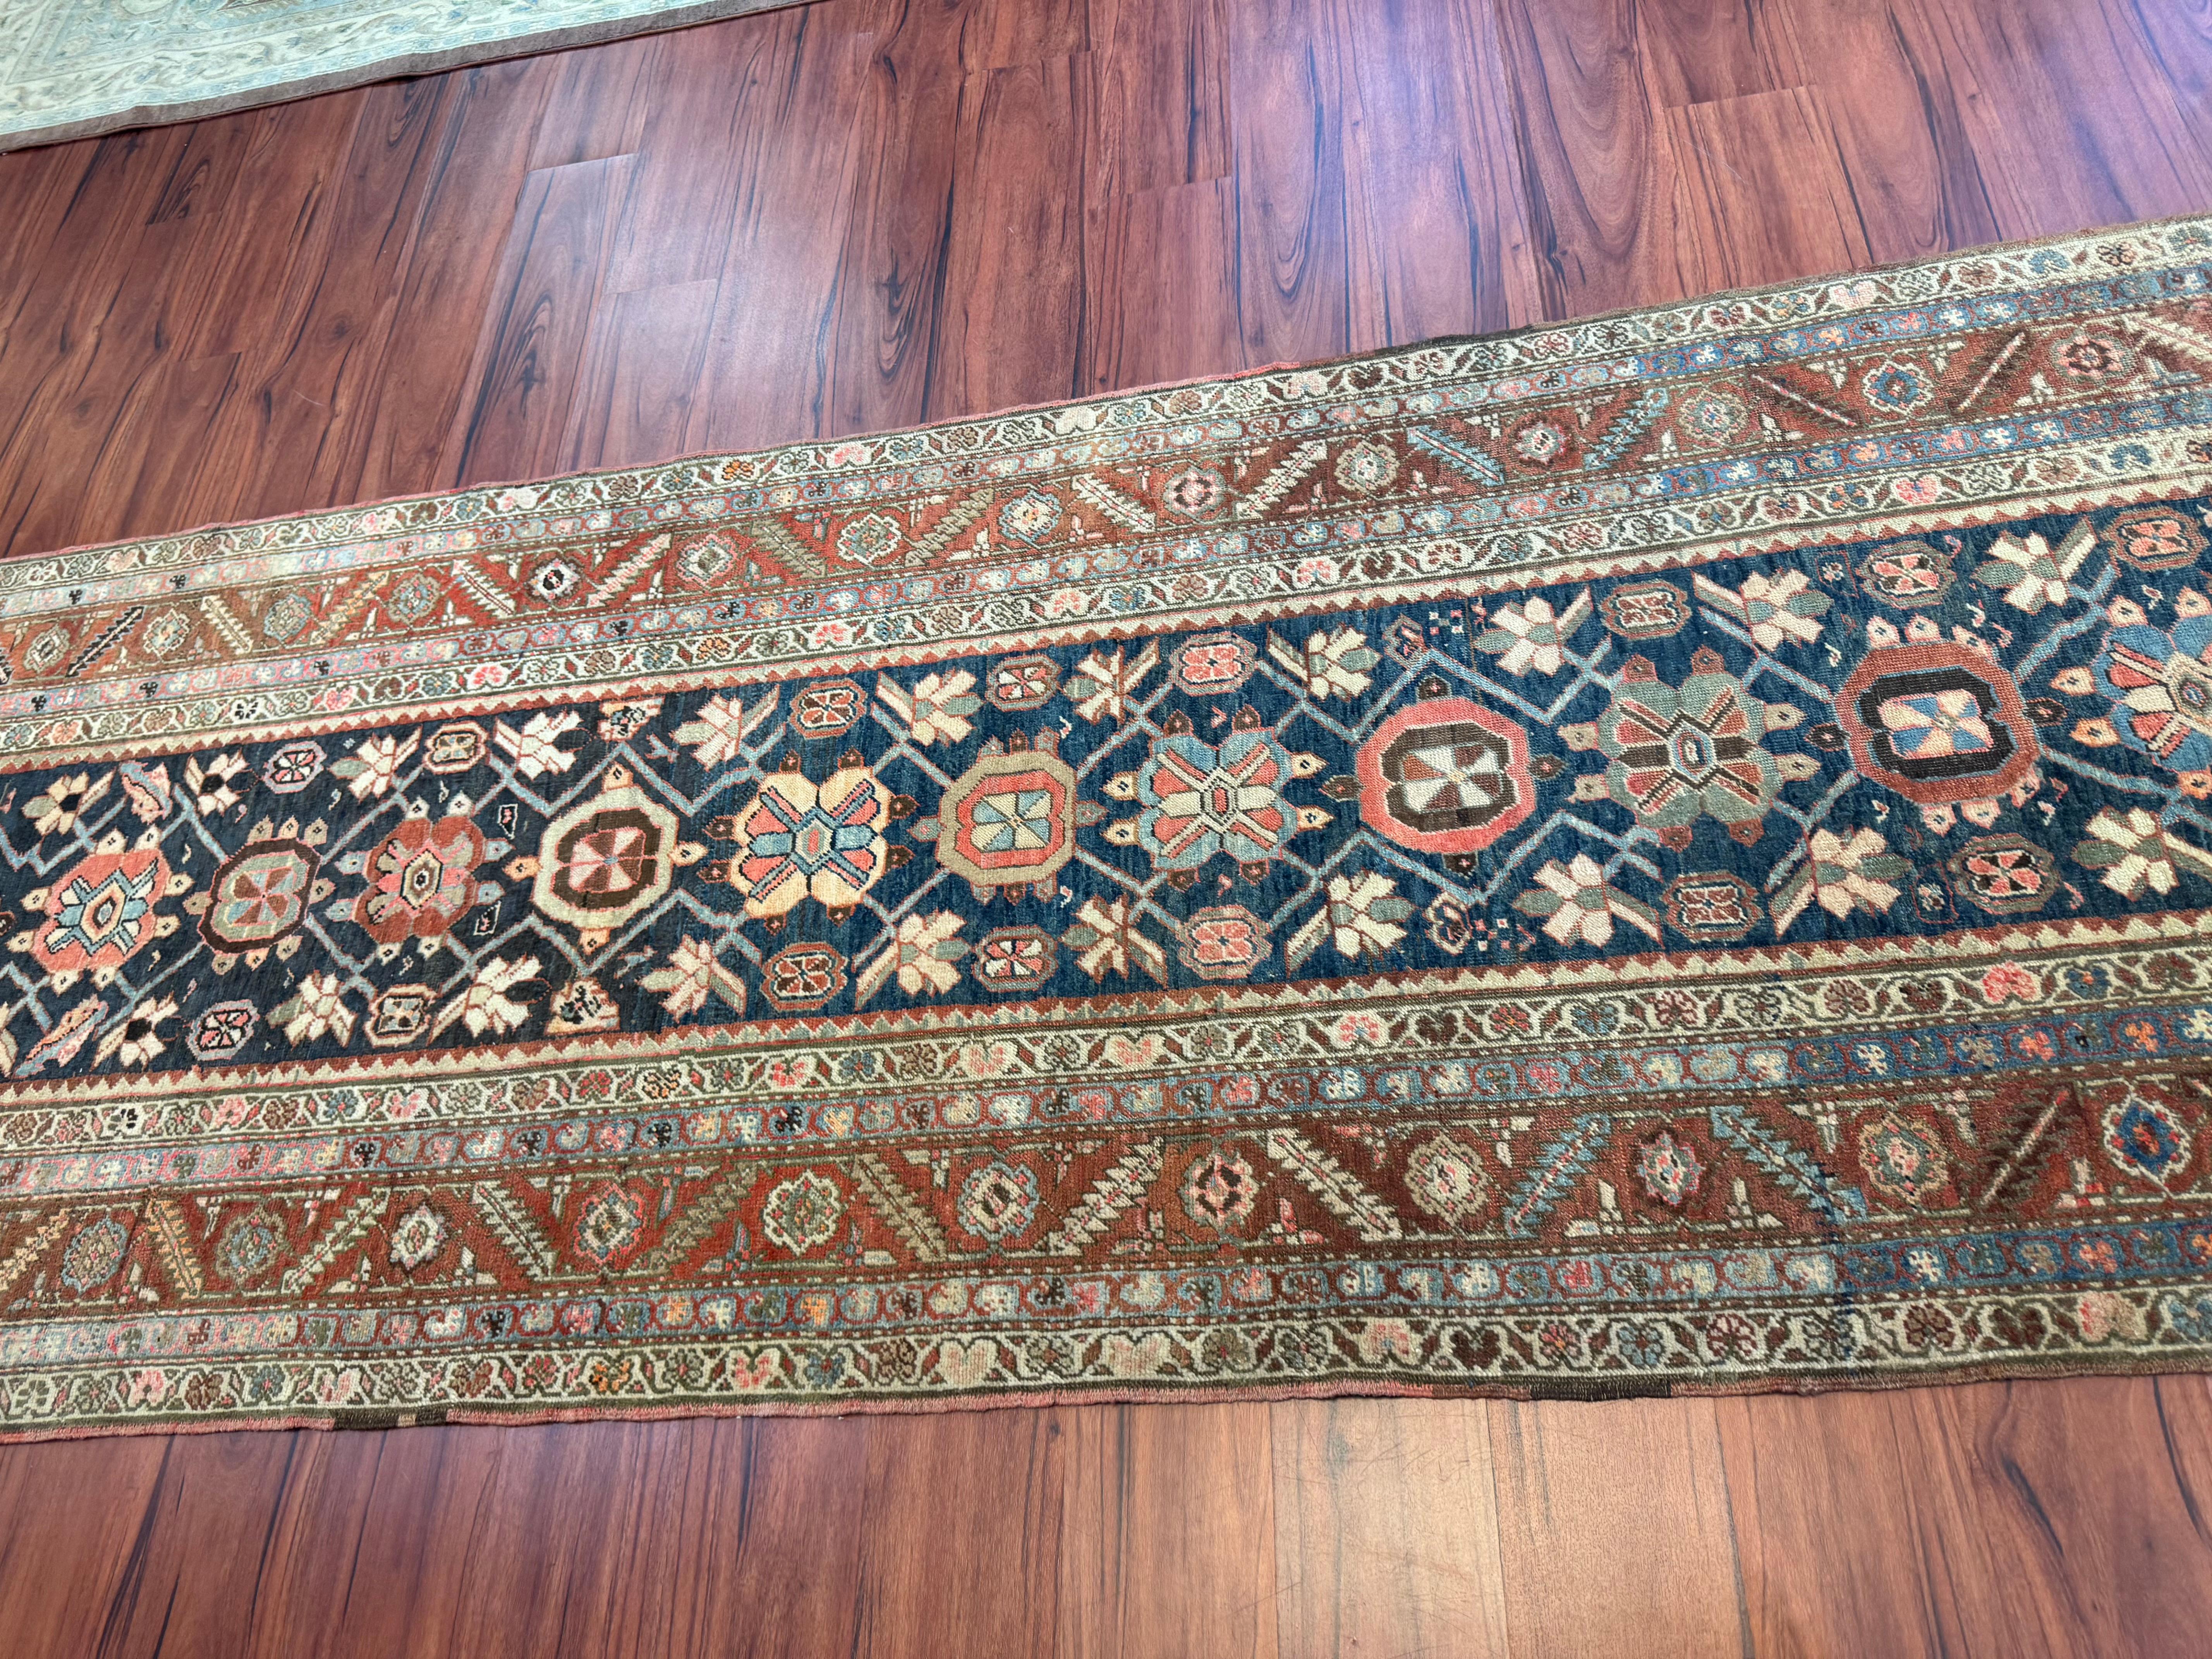 Un superbe tapis de course Heriz ancien, originaire d'Iran dans les années 1920. Ce tapis est en excellent état pour sa riche histoire et n'a subi que des réparations mineures correspondant à son âge. 